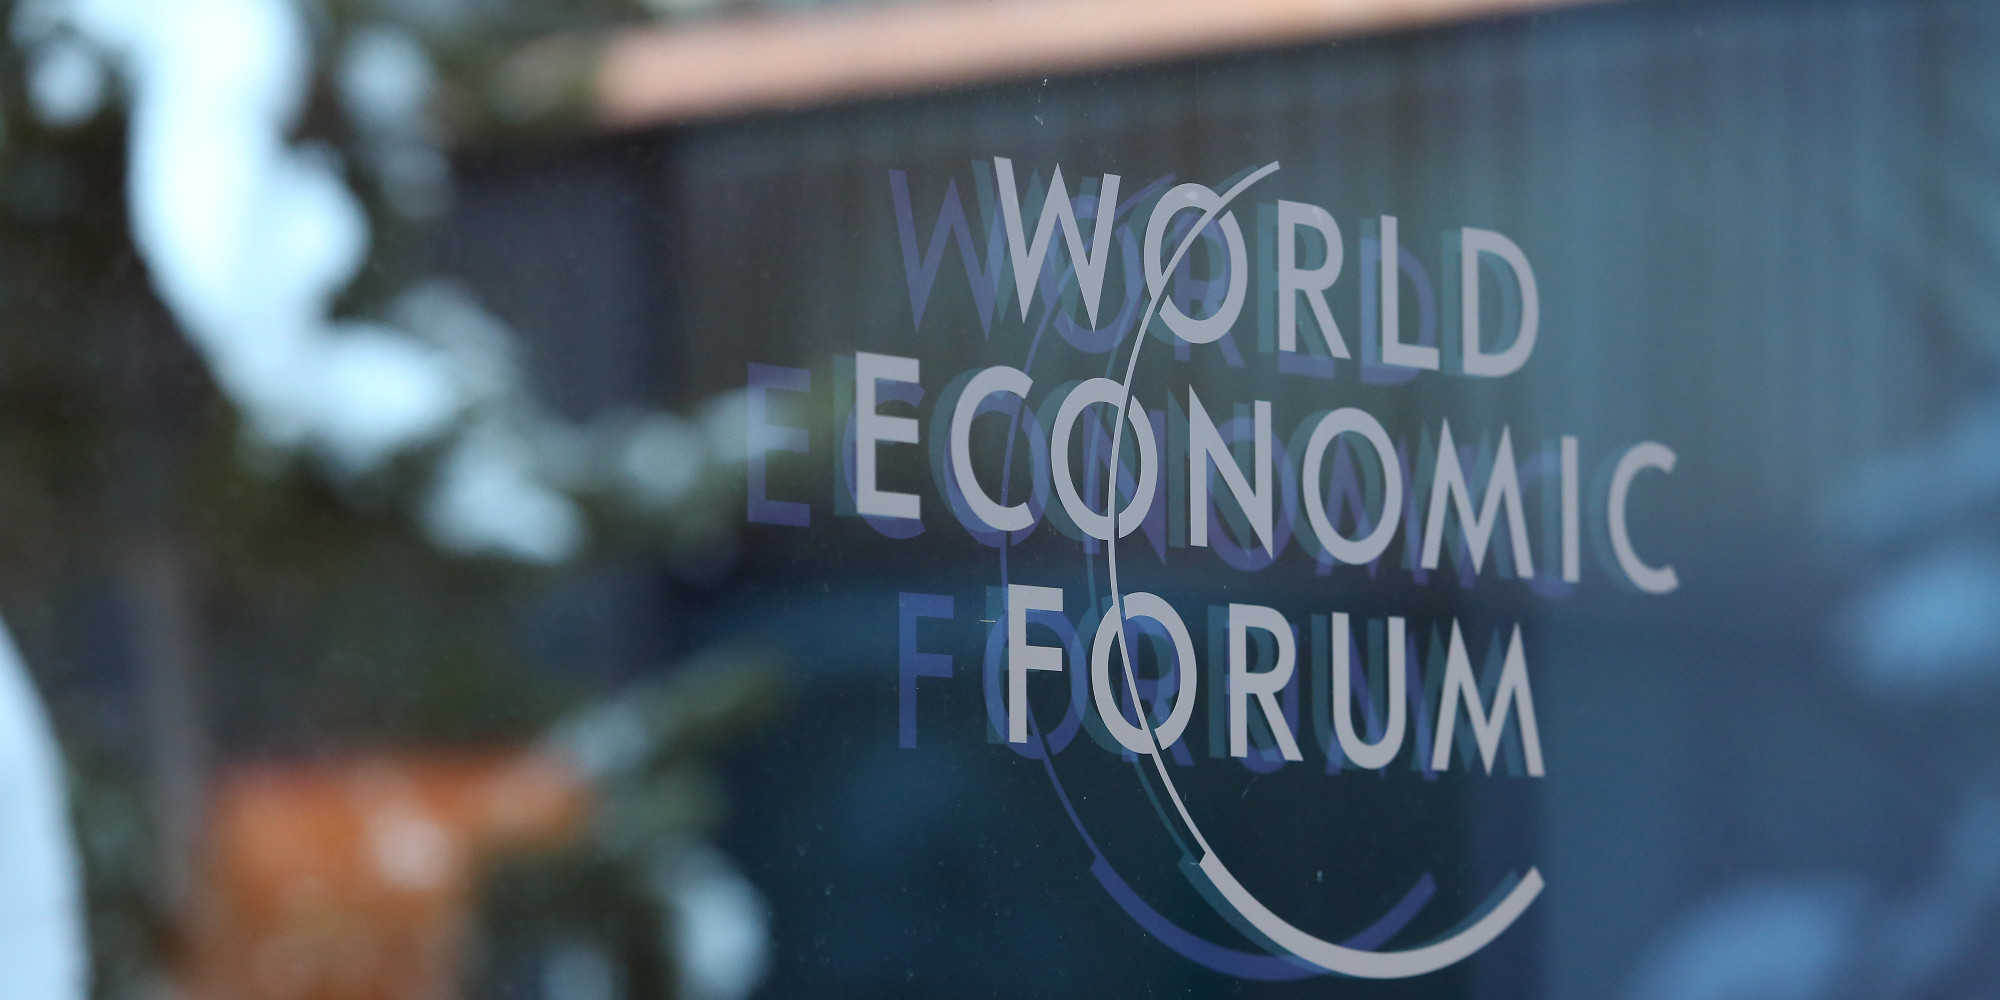 Հայաստանը բարելավել է դիրքերը Համաշխարհային տնտեսական ֆորումի վարկանշային ցանկում